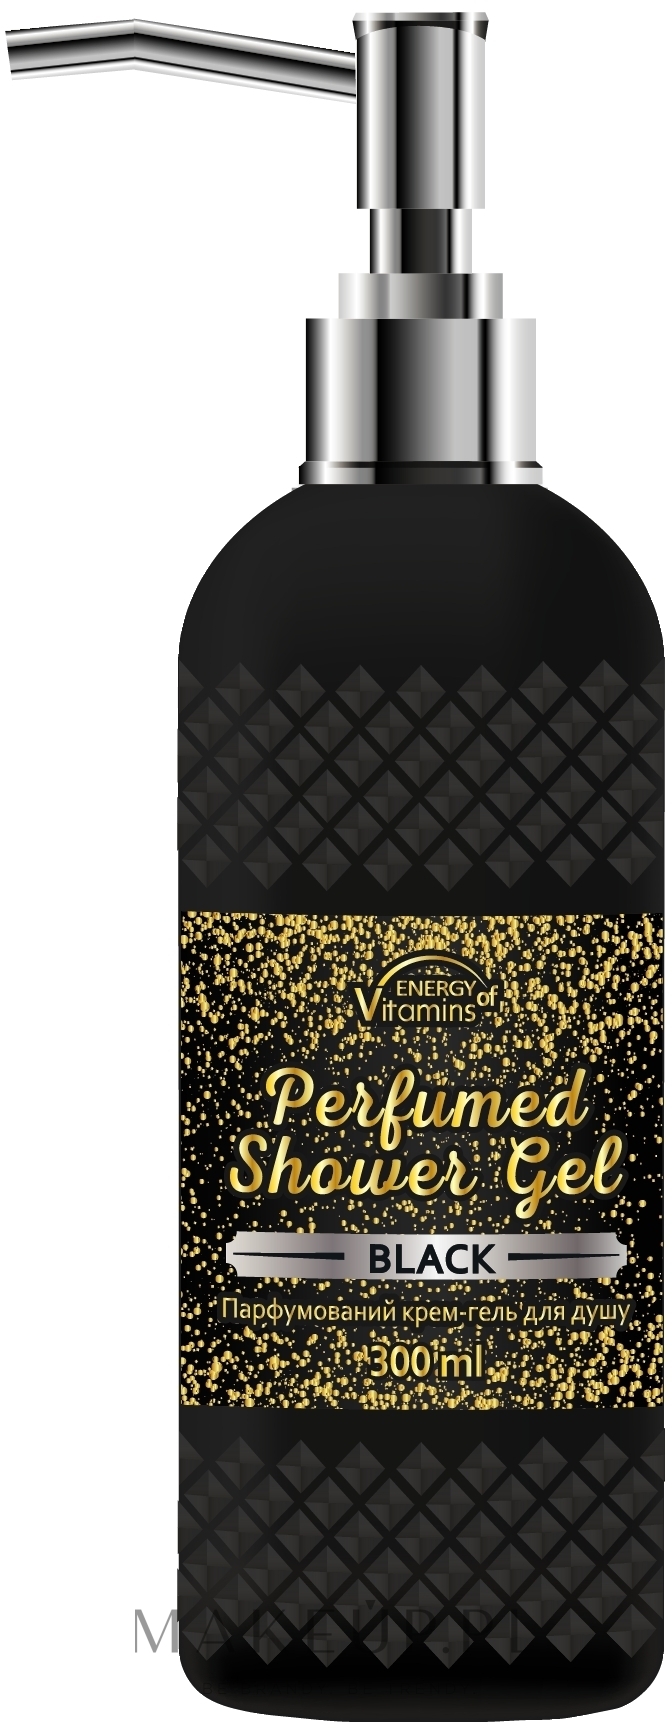 Perfumowany kremowy żel pod prysznic - Energy of Vitamins Perfumed Black — Zdjęcie 300 ml